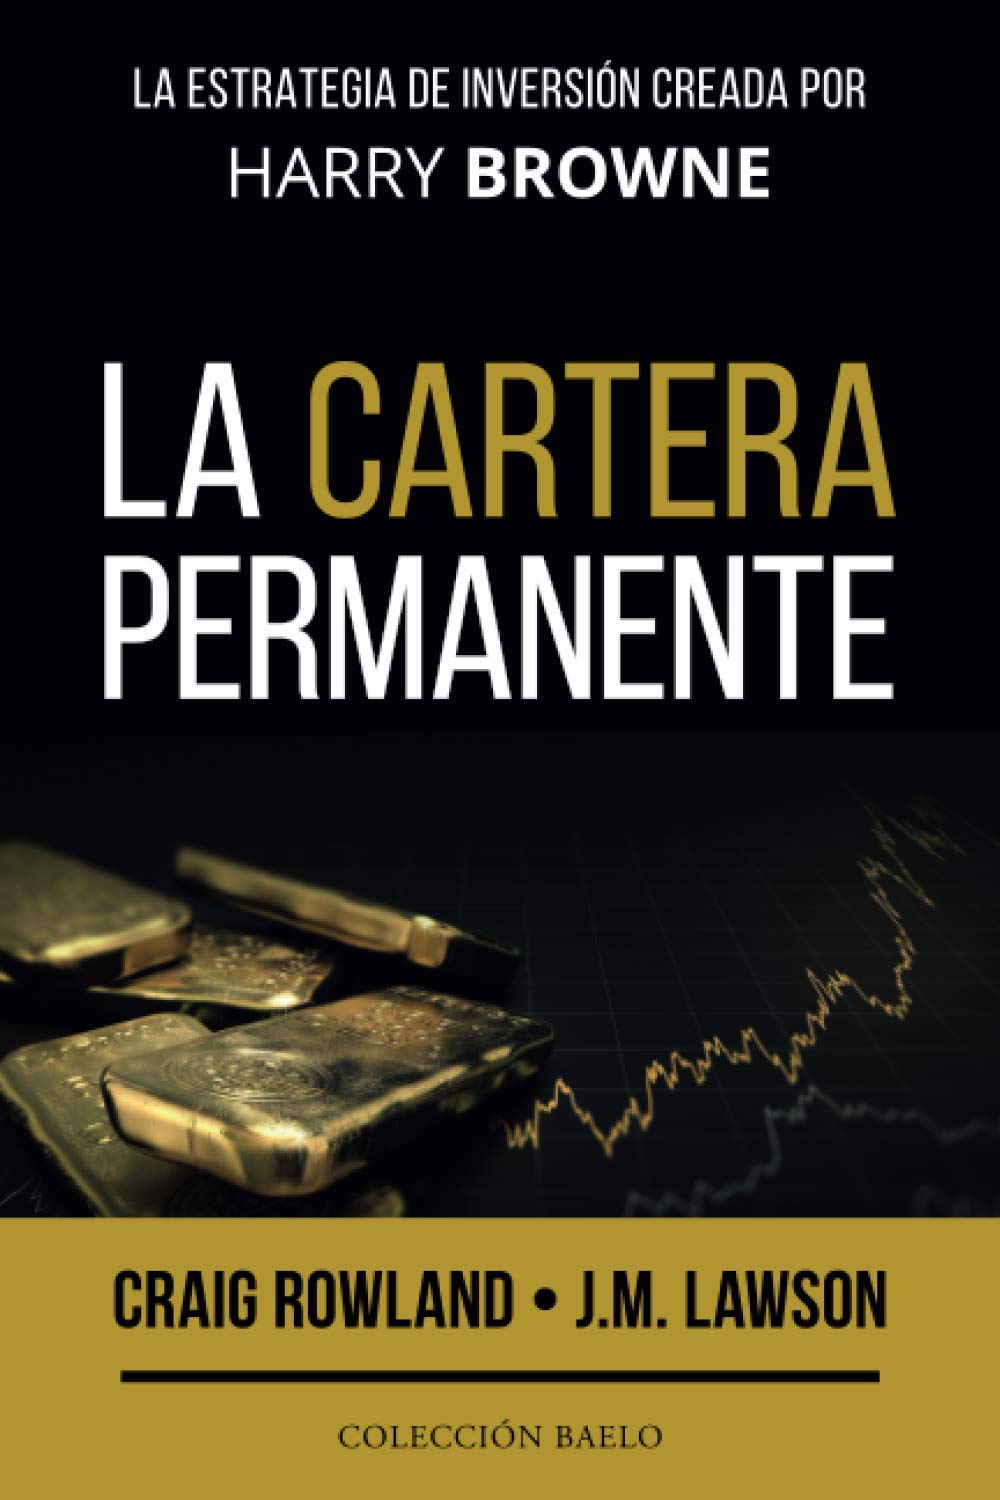 invesores_autores_libros_gestores_españoles_cartera